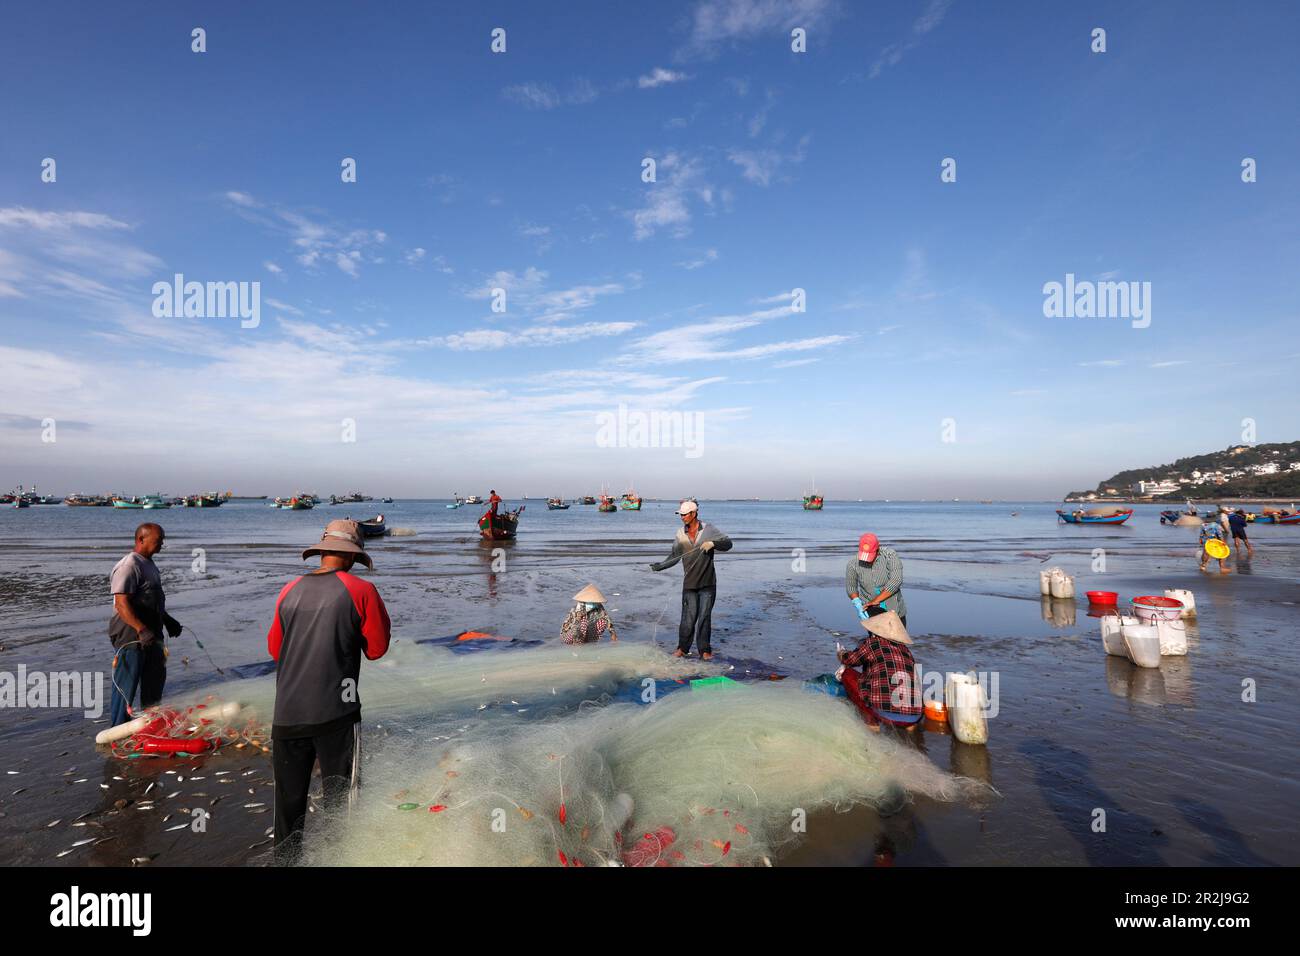 La réparation des filets de pêche, les pêcheurs Accrocher Dua bay, Vung Tau, Vietnam, Indochine, Asie du Sud-Est, l'Asie Banque D'Images